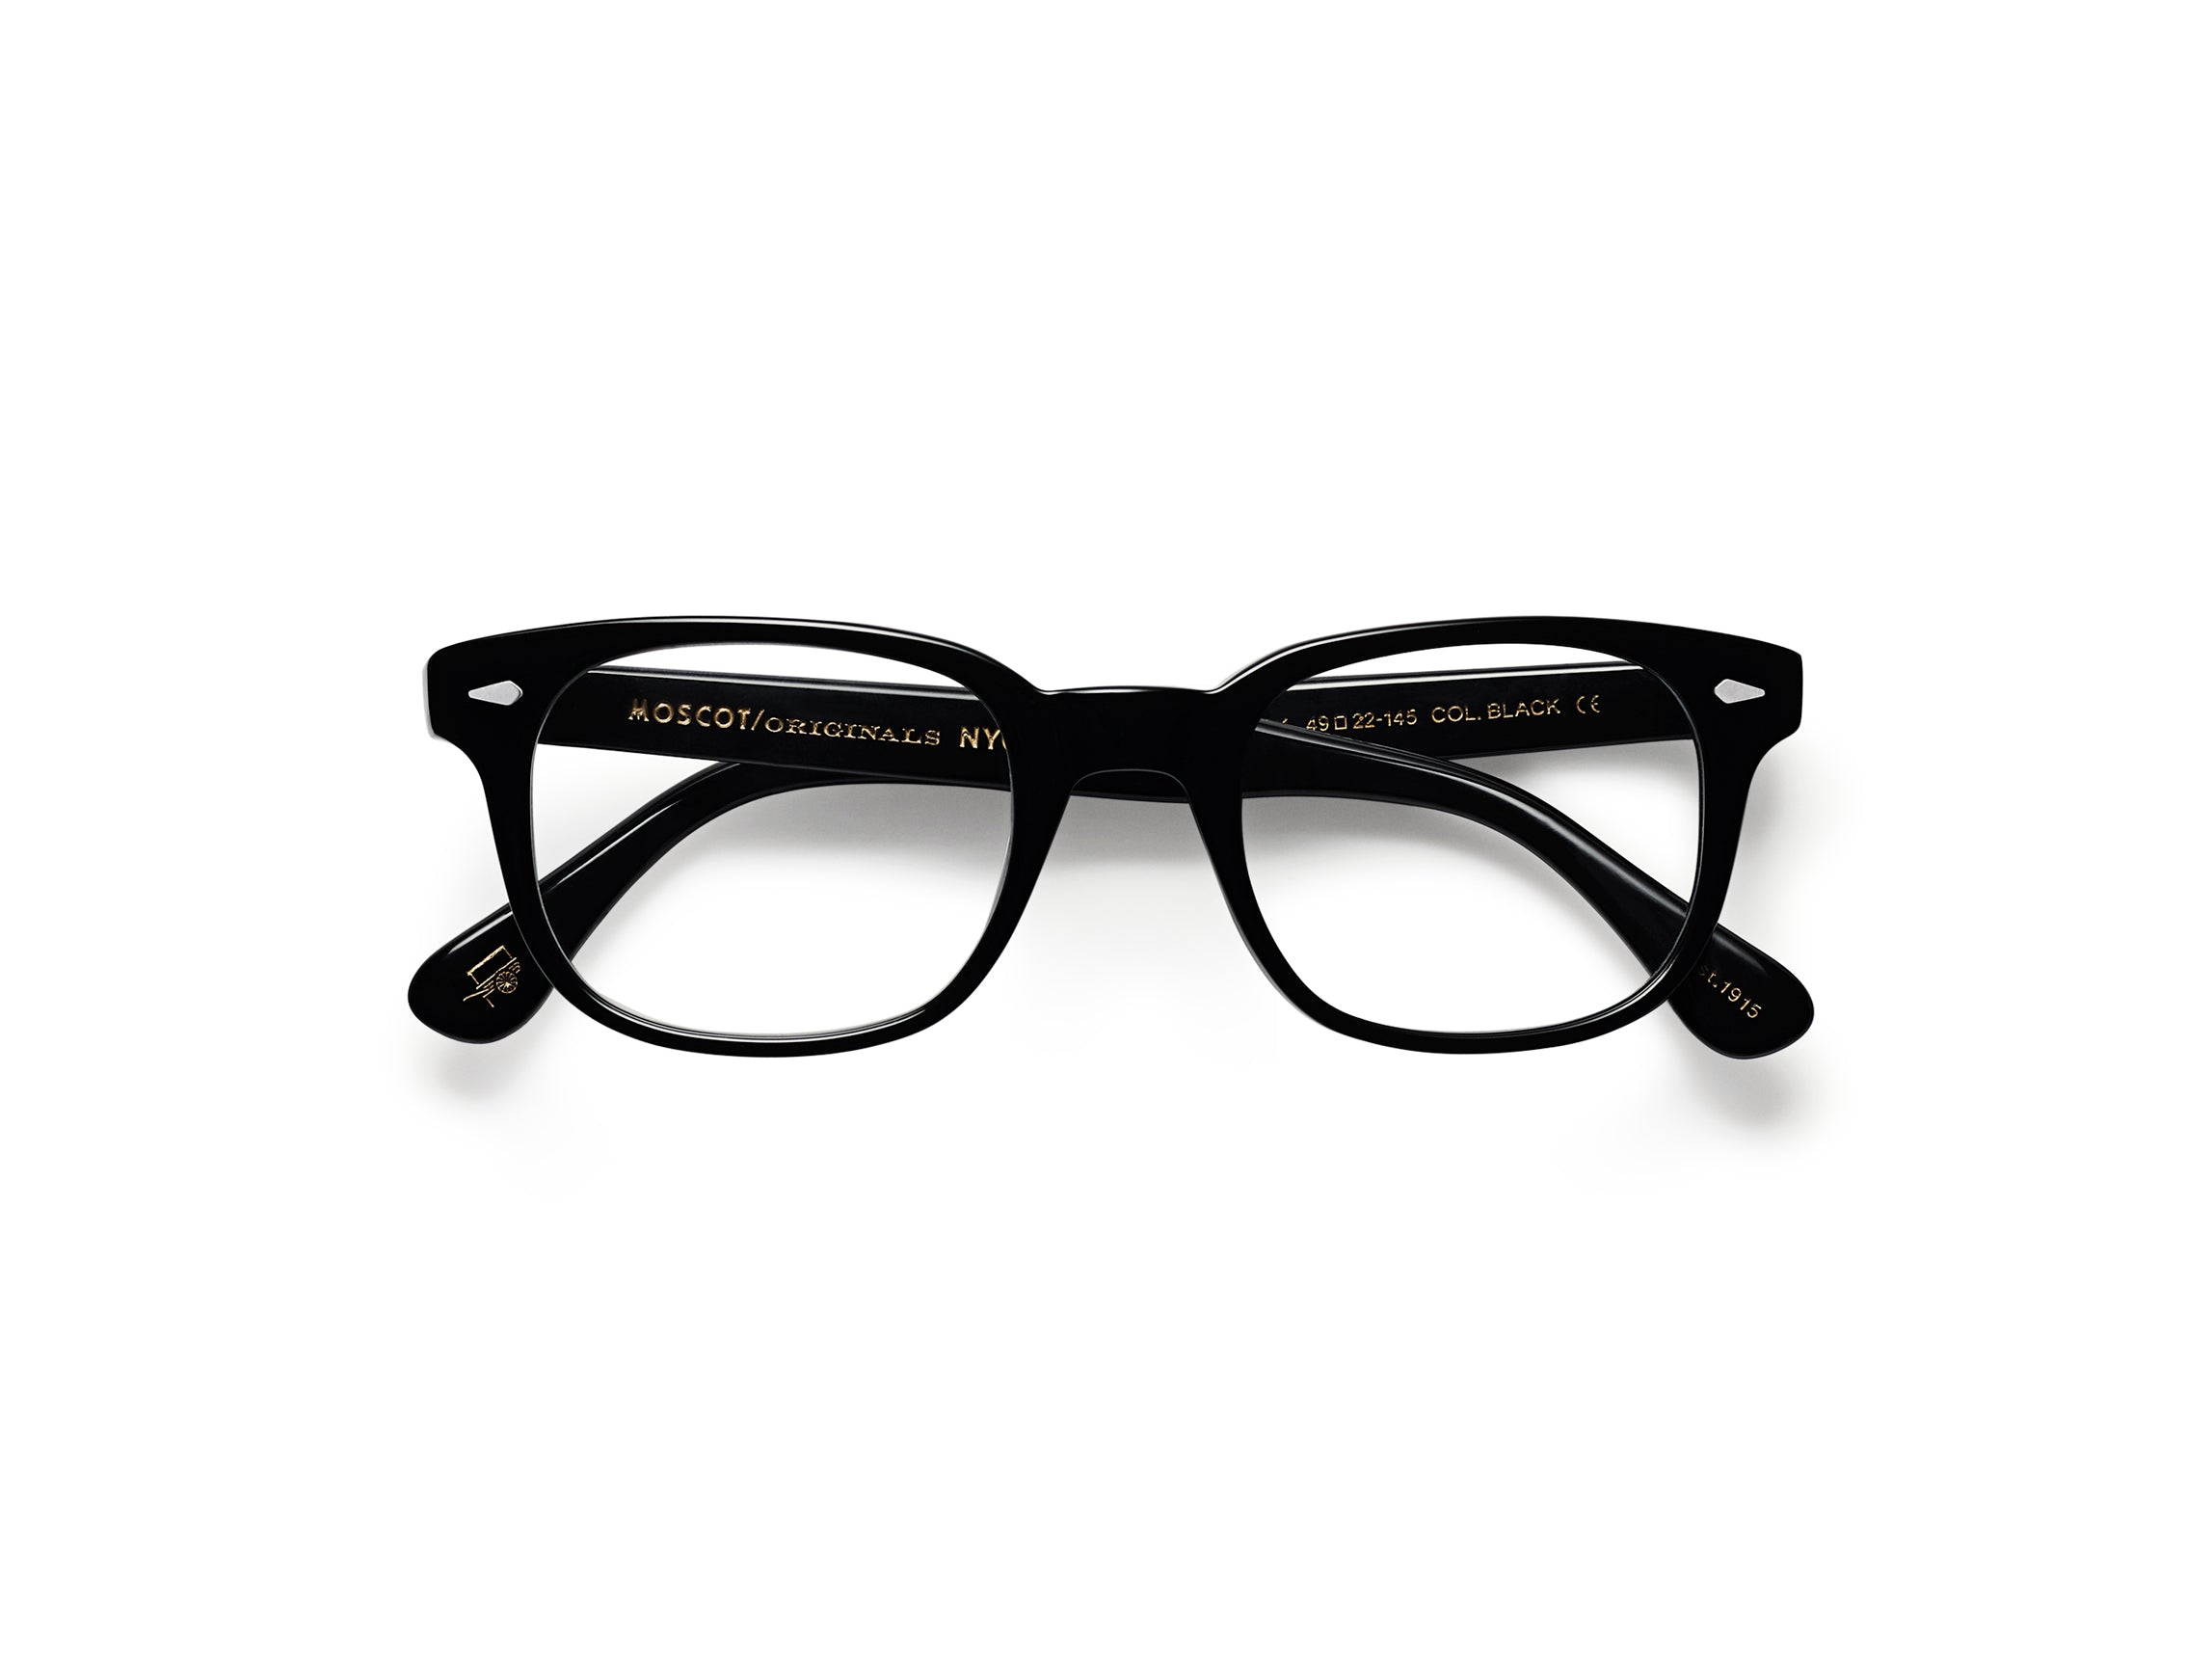 MOSCOT BOYCHIK glasses - yosemiteeyewear 